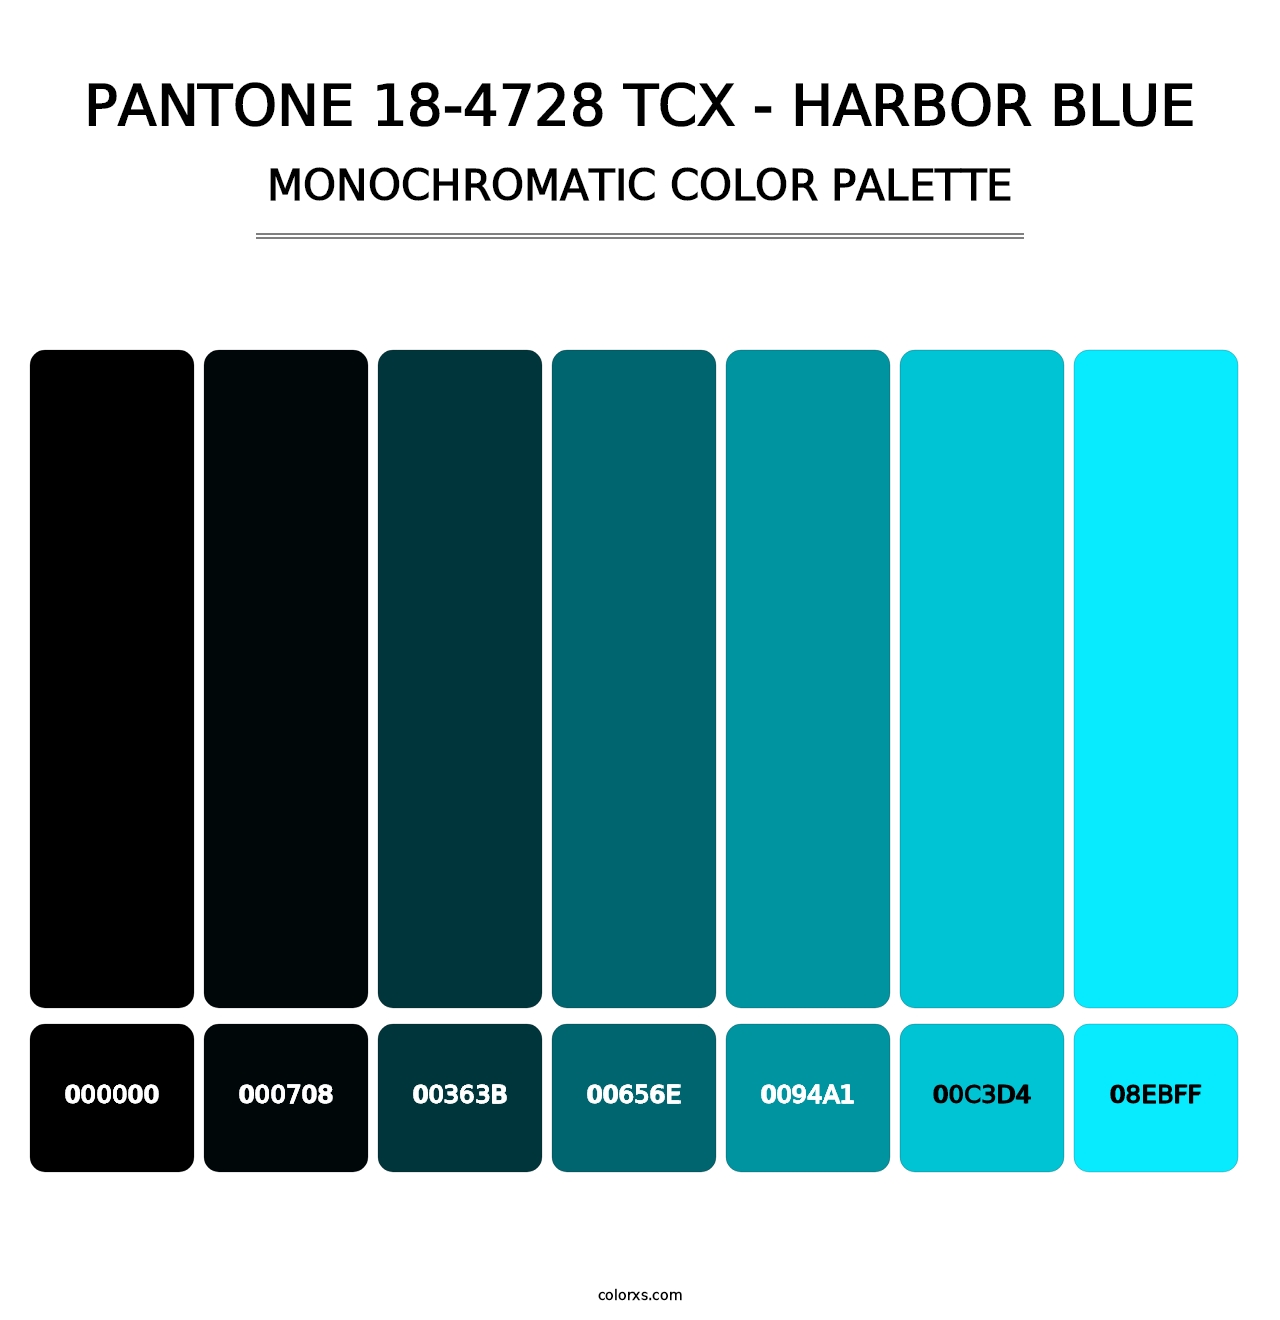 PANTONE 18-4728 TCX - Harbor Blue - Monochromatic Color Palette